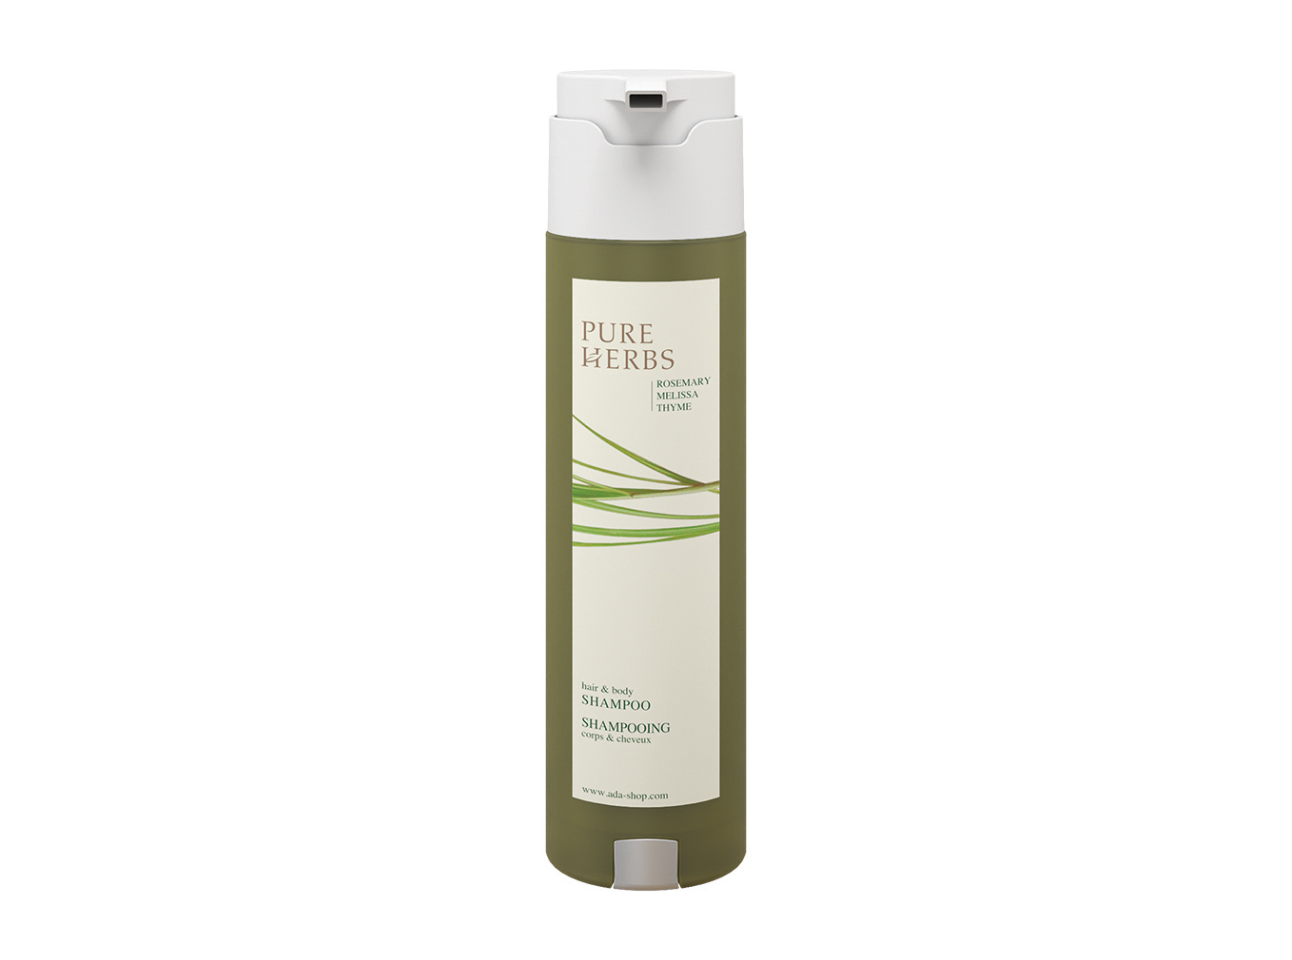 Pure Herbs 300ml Shampoo Hair & Body im Flacon SHAPE mit Pumpe